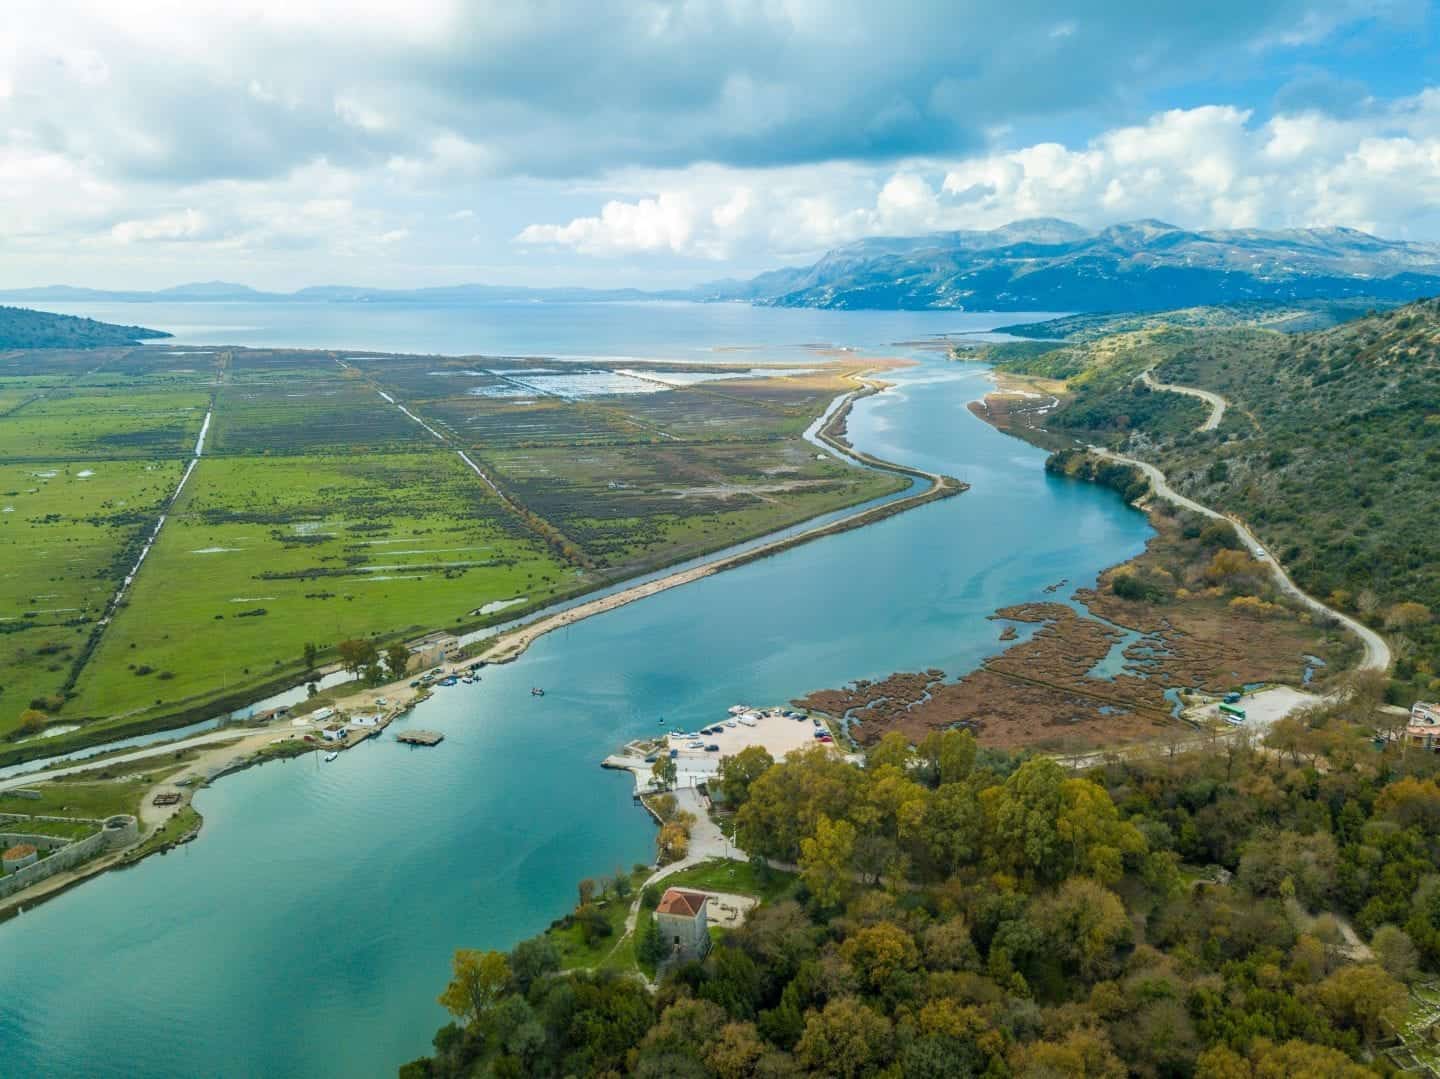 Descubra Butrint, Albania: uno de los mejores sitios de la UNESCO de Albania, vea Butrint, incluidas las áreas de playa y campo con un río que fluye hacia aguas abiertas con montañas en la distancia bajo un cielo nublado